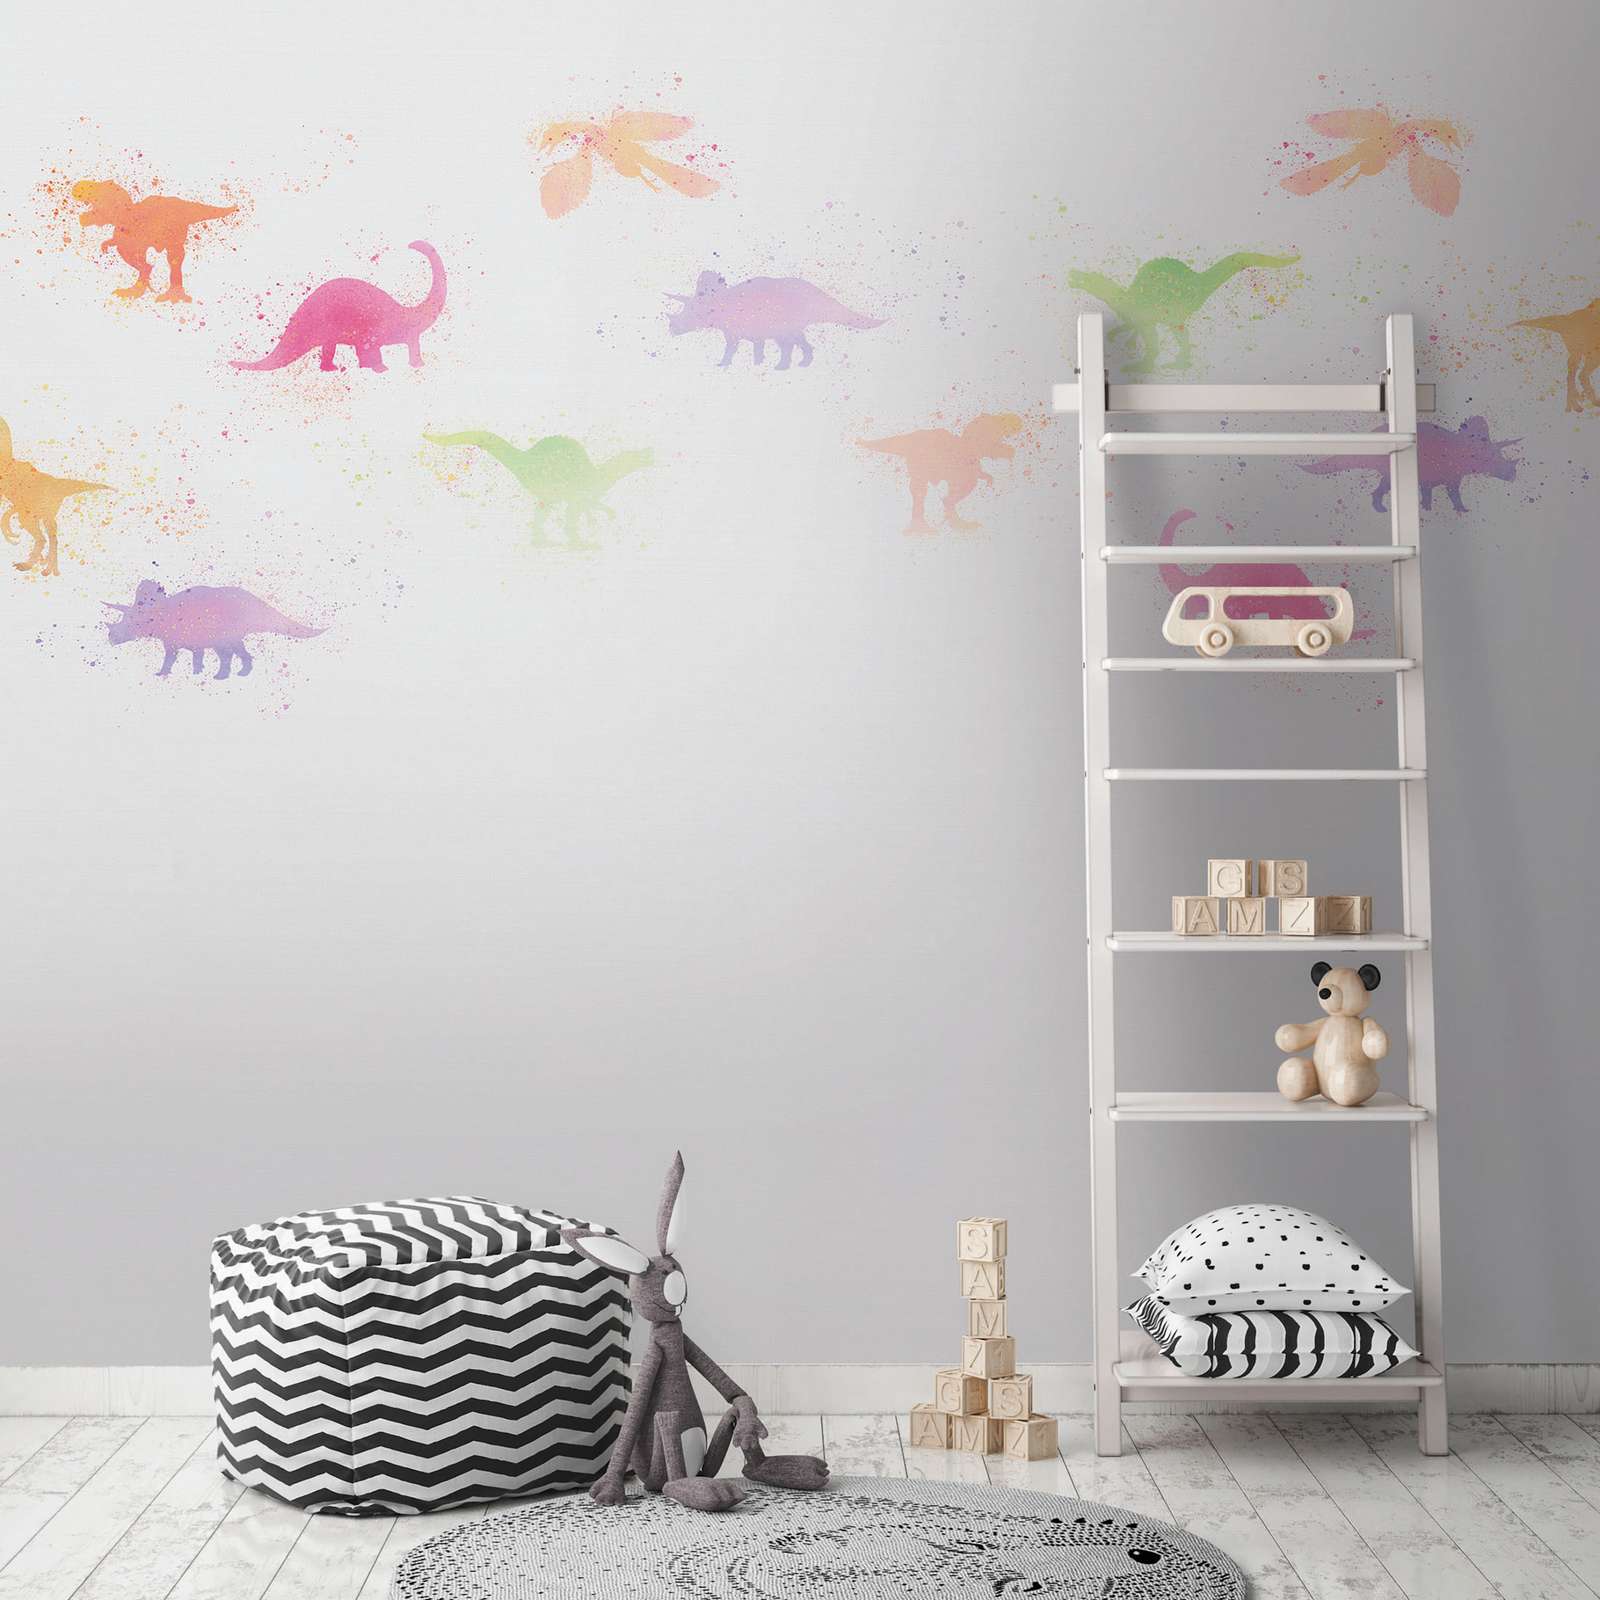             Fototapete Kinderzimmer mit kleinen Dinosauriern – Bunt, Weiß
        